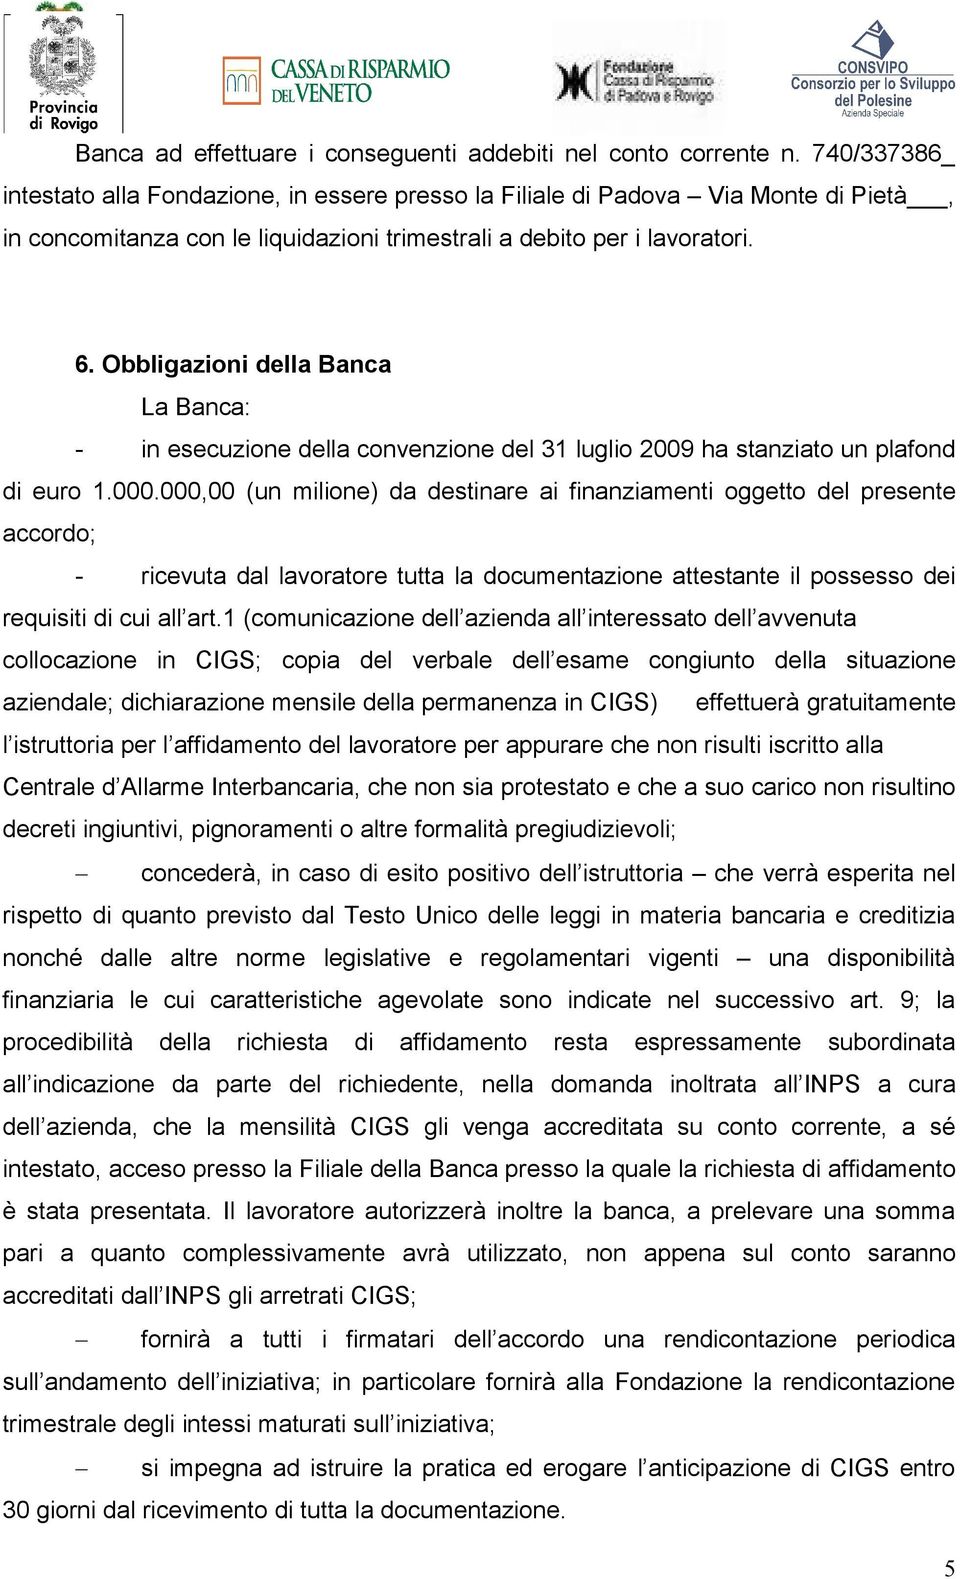 Obbligazioni della Banca La Banca: - in esecuzione della convenzione del 31 luglio 2009 ha stanziato un plafond di euro 1.000.